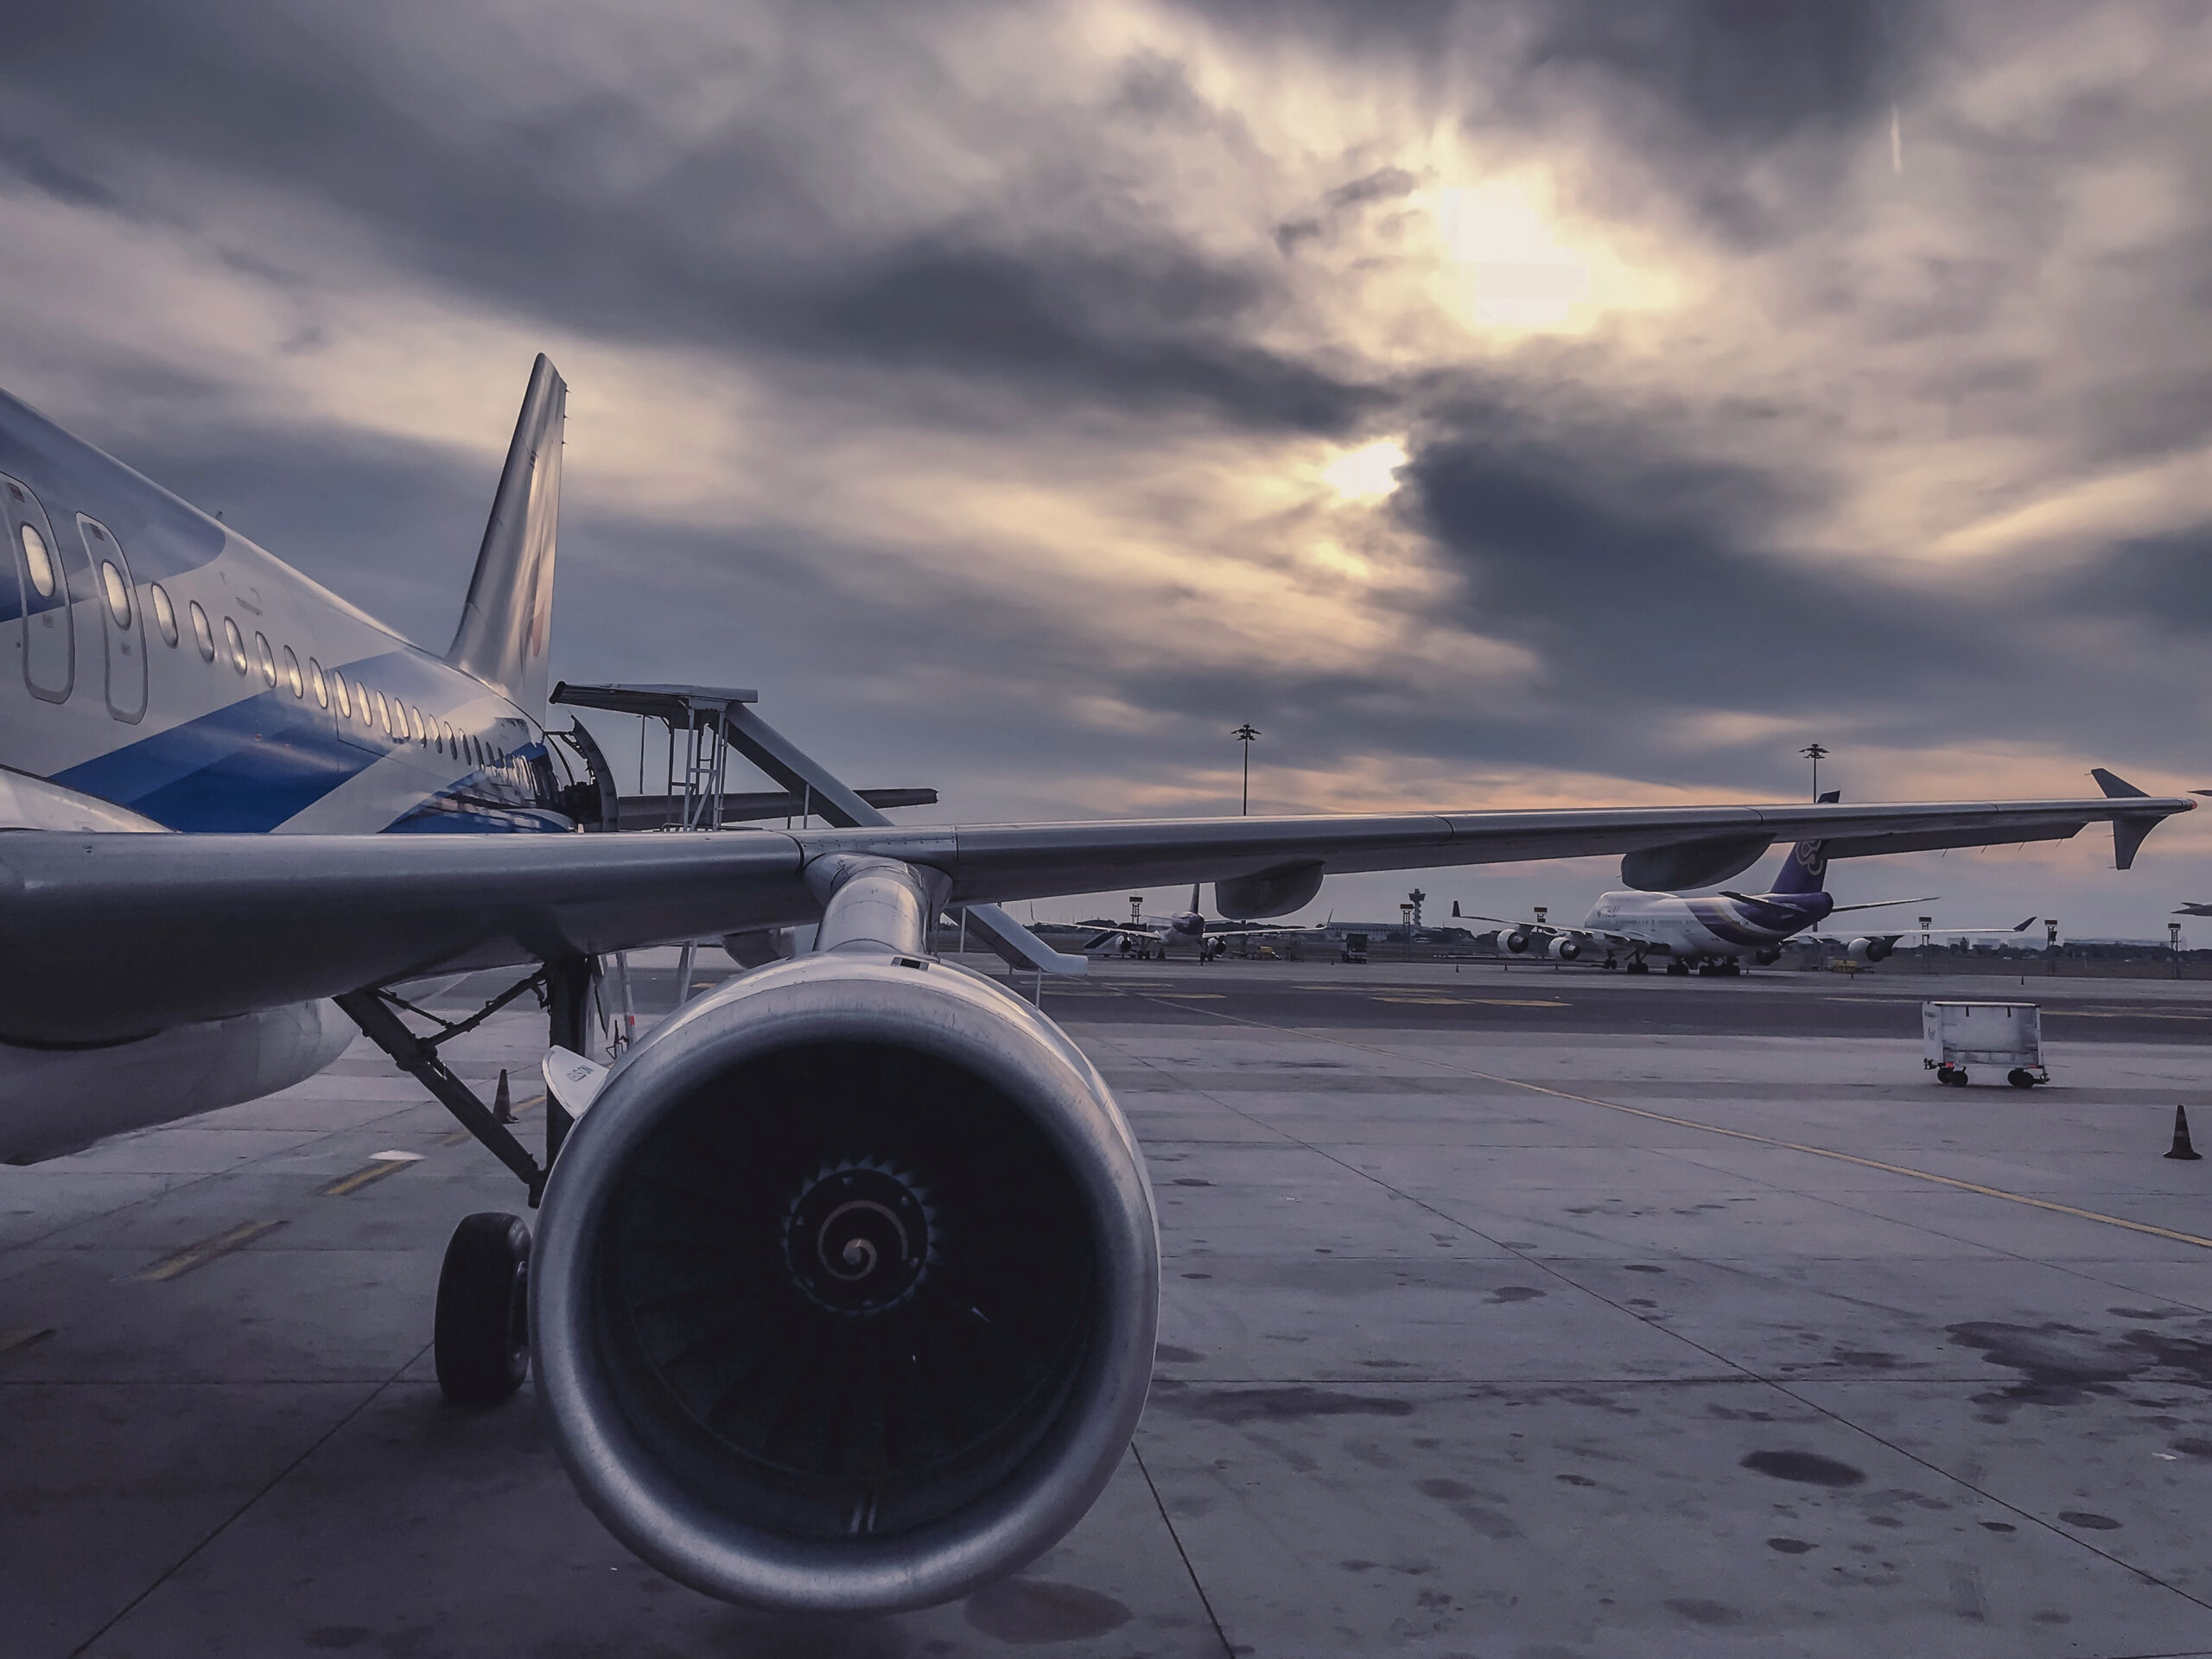 Fotoğraf : Uçak, Havayolu, Gökyüzü, Geniş Vücut Uçak, Havacılık, Uzay amaçlanan Rüyada Jet Uçağı Görmek